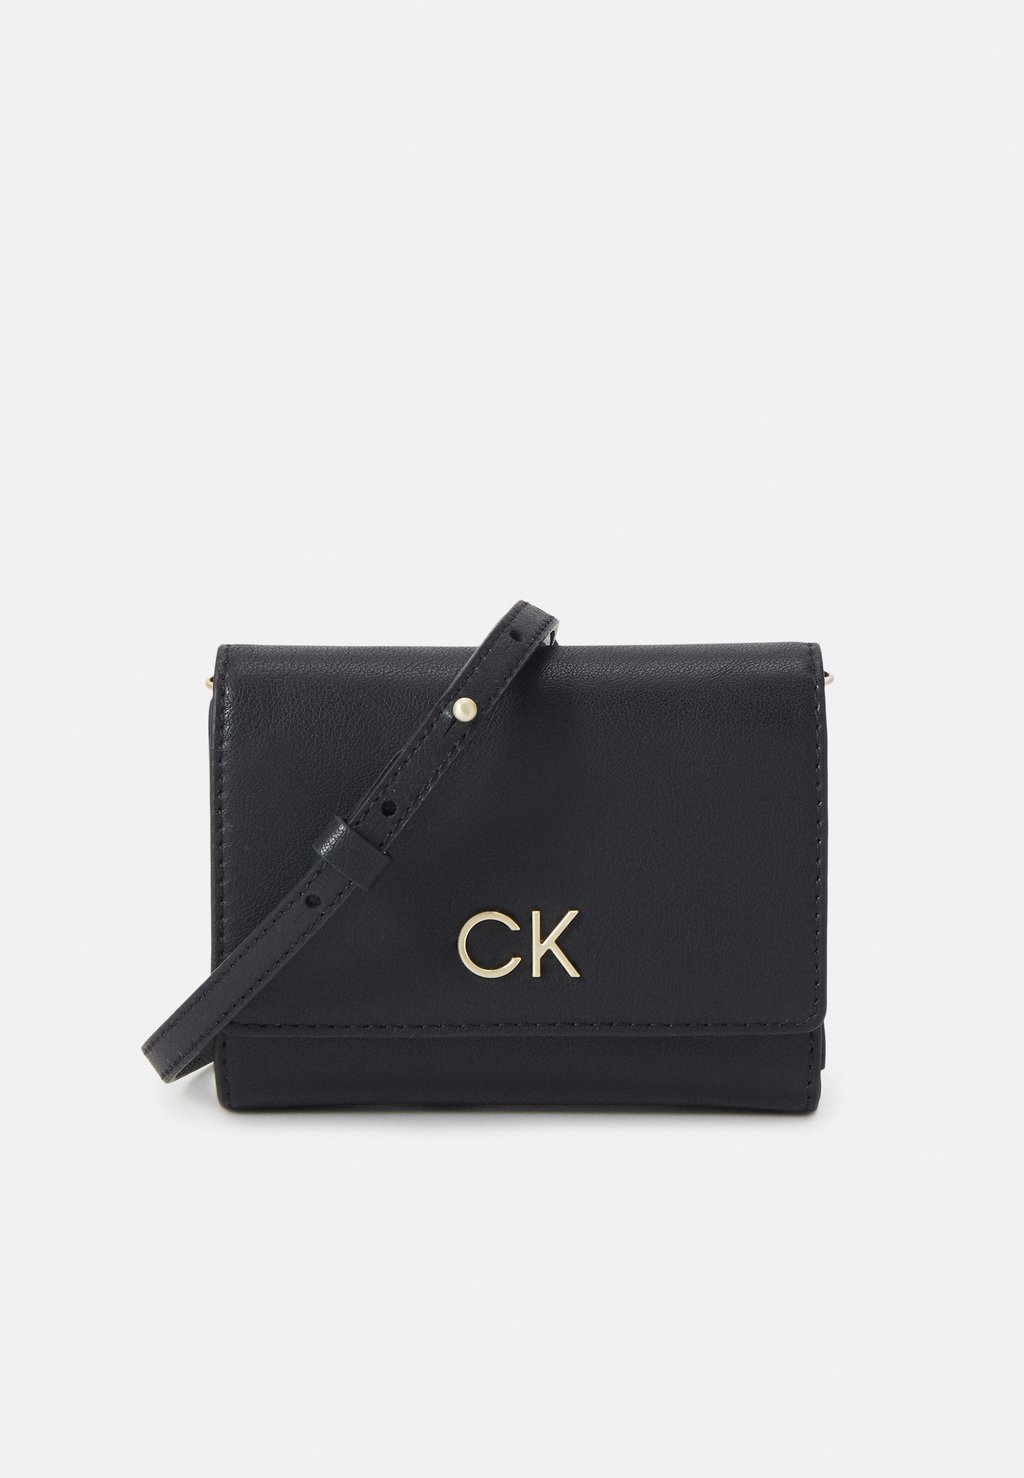 Кошелек LOCK TRIFOLD CHAIN Calvin Klein, цвет black кошелек mini quilt small trifold calvin klein цвет black